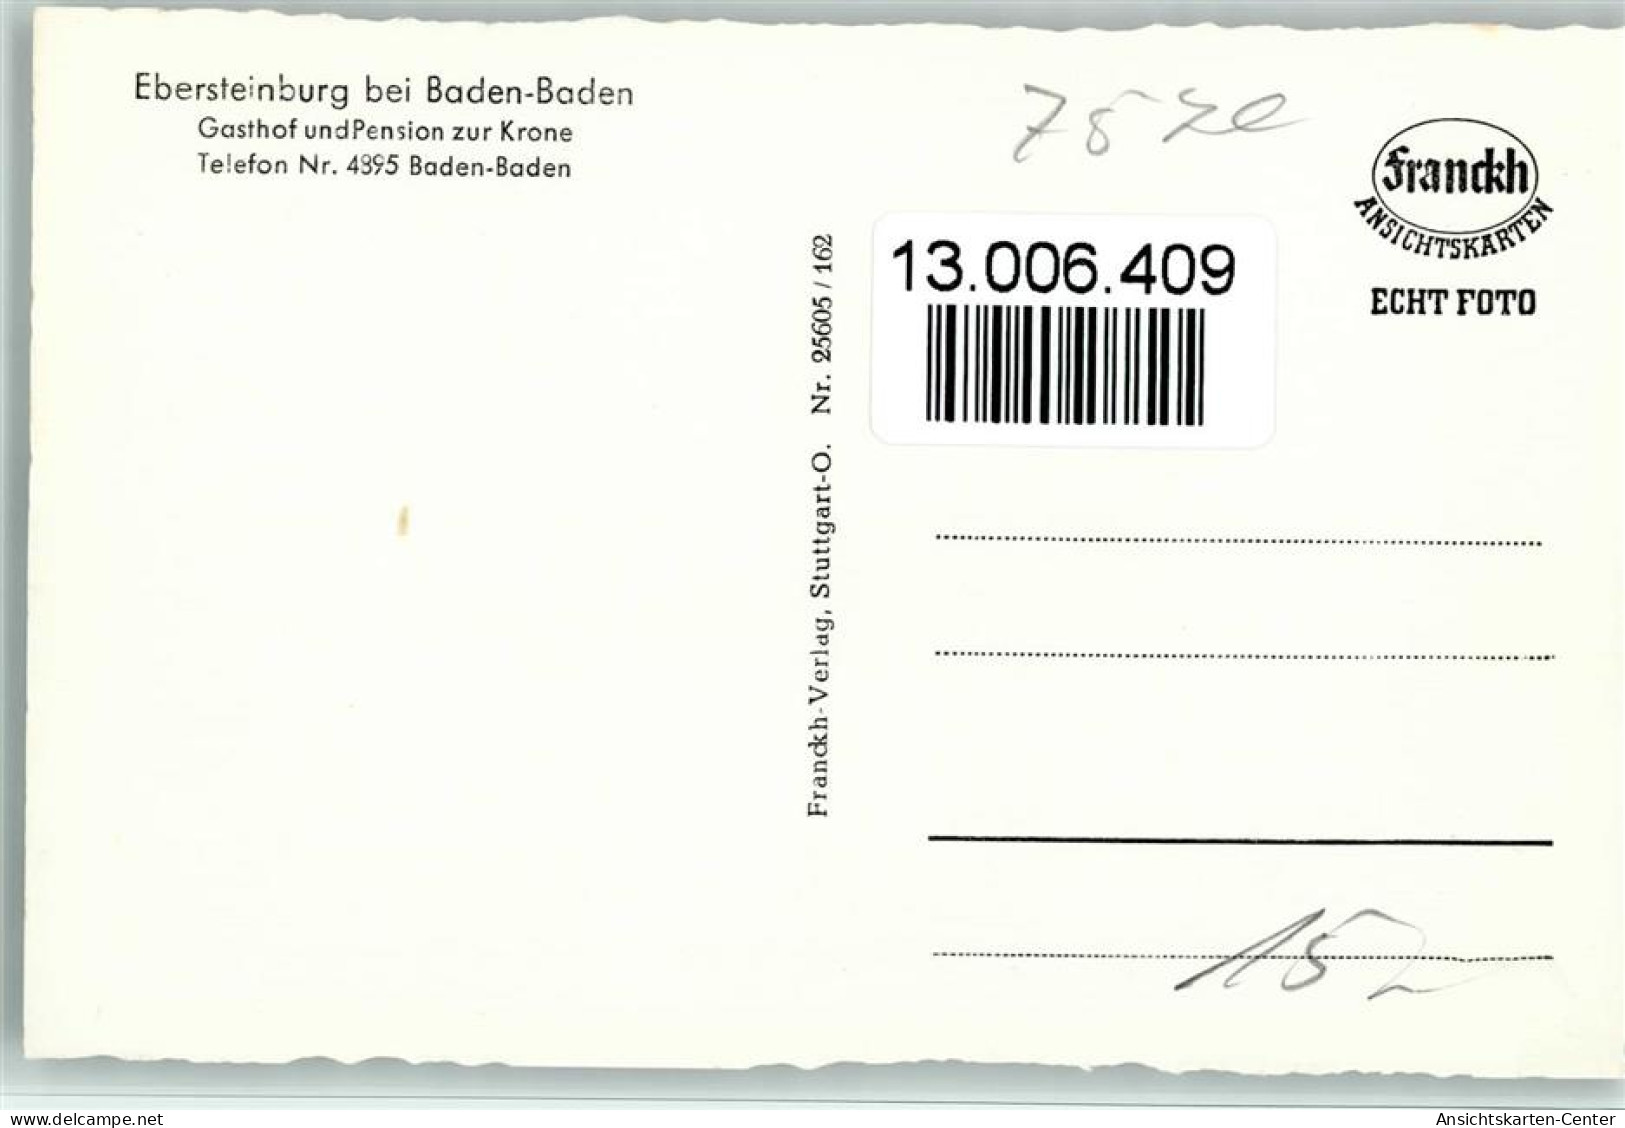 13006409 - Ebersteinburg - Baden-Baden